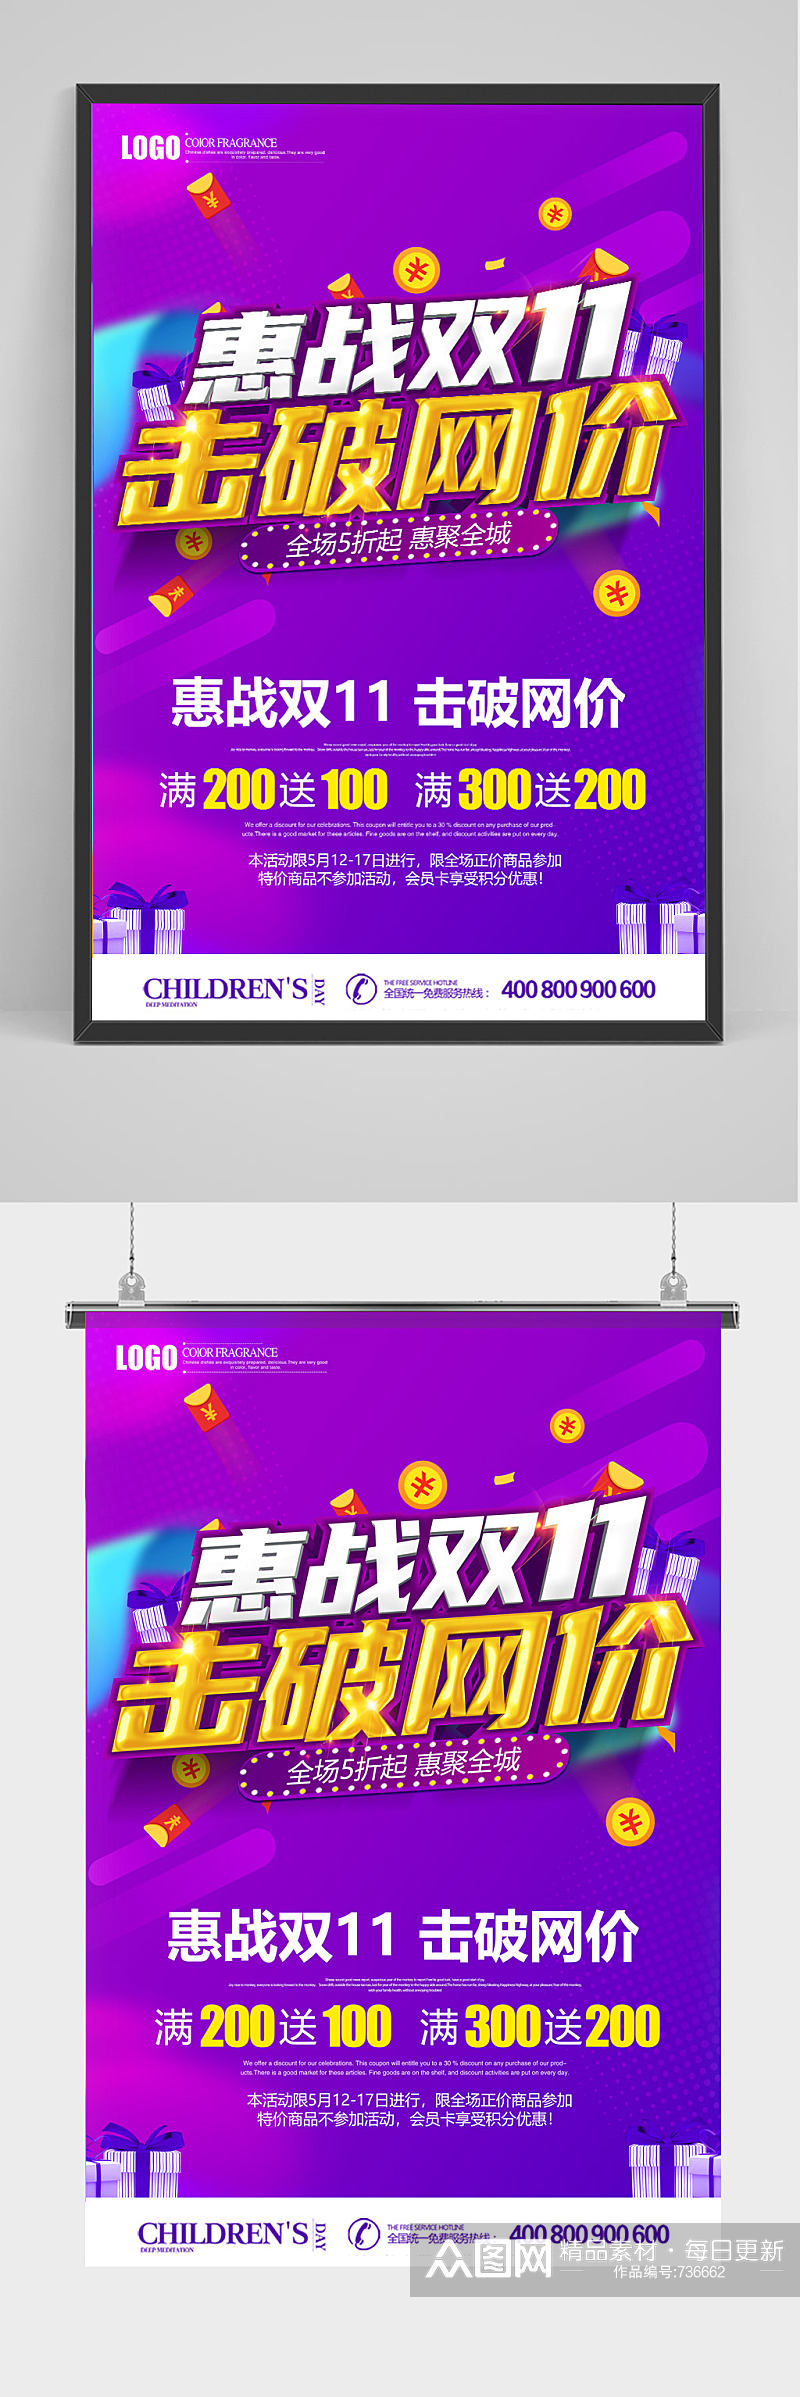 惠战双十一促销海报设计素材